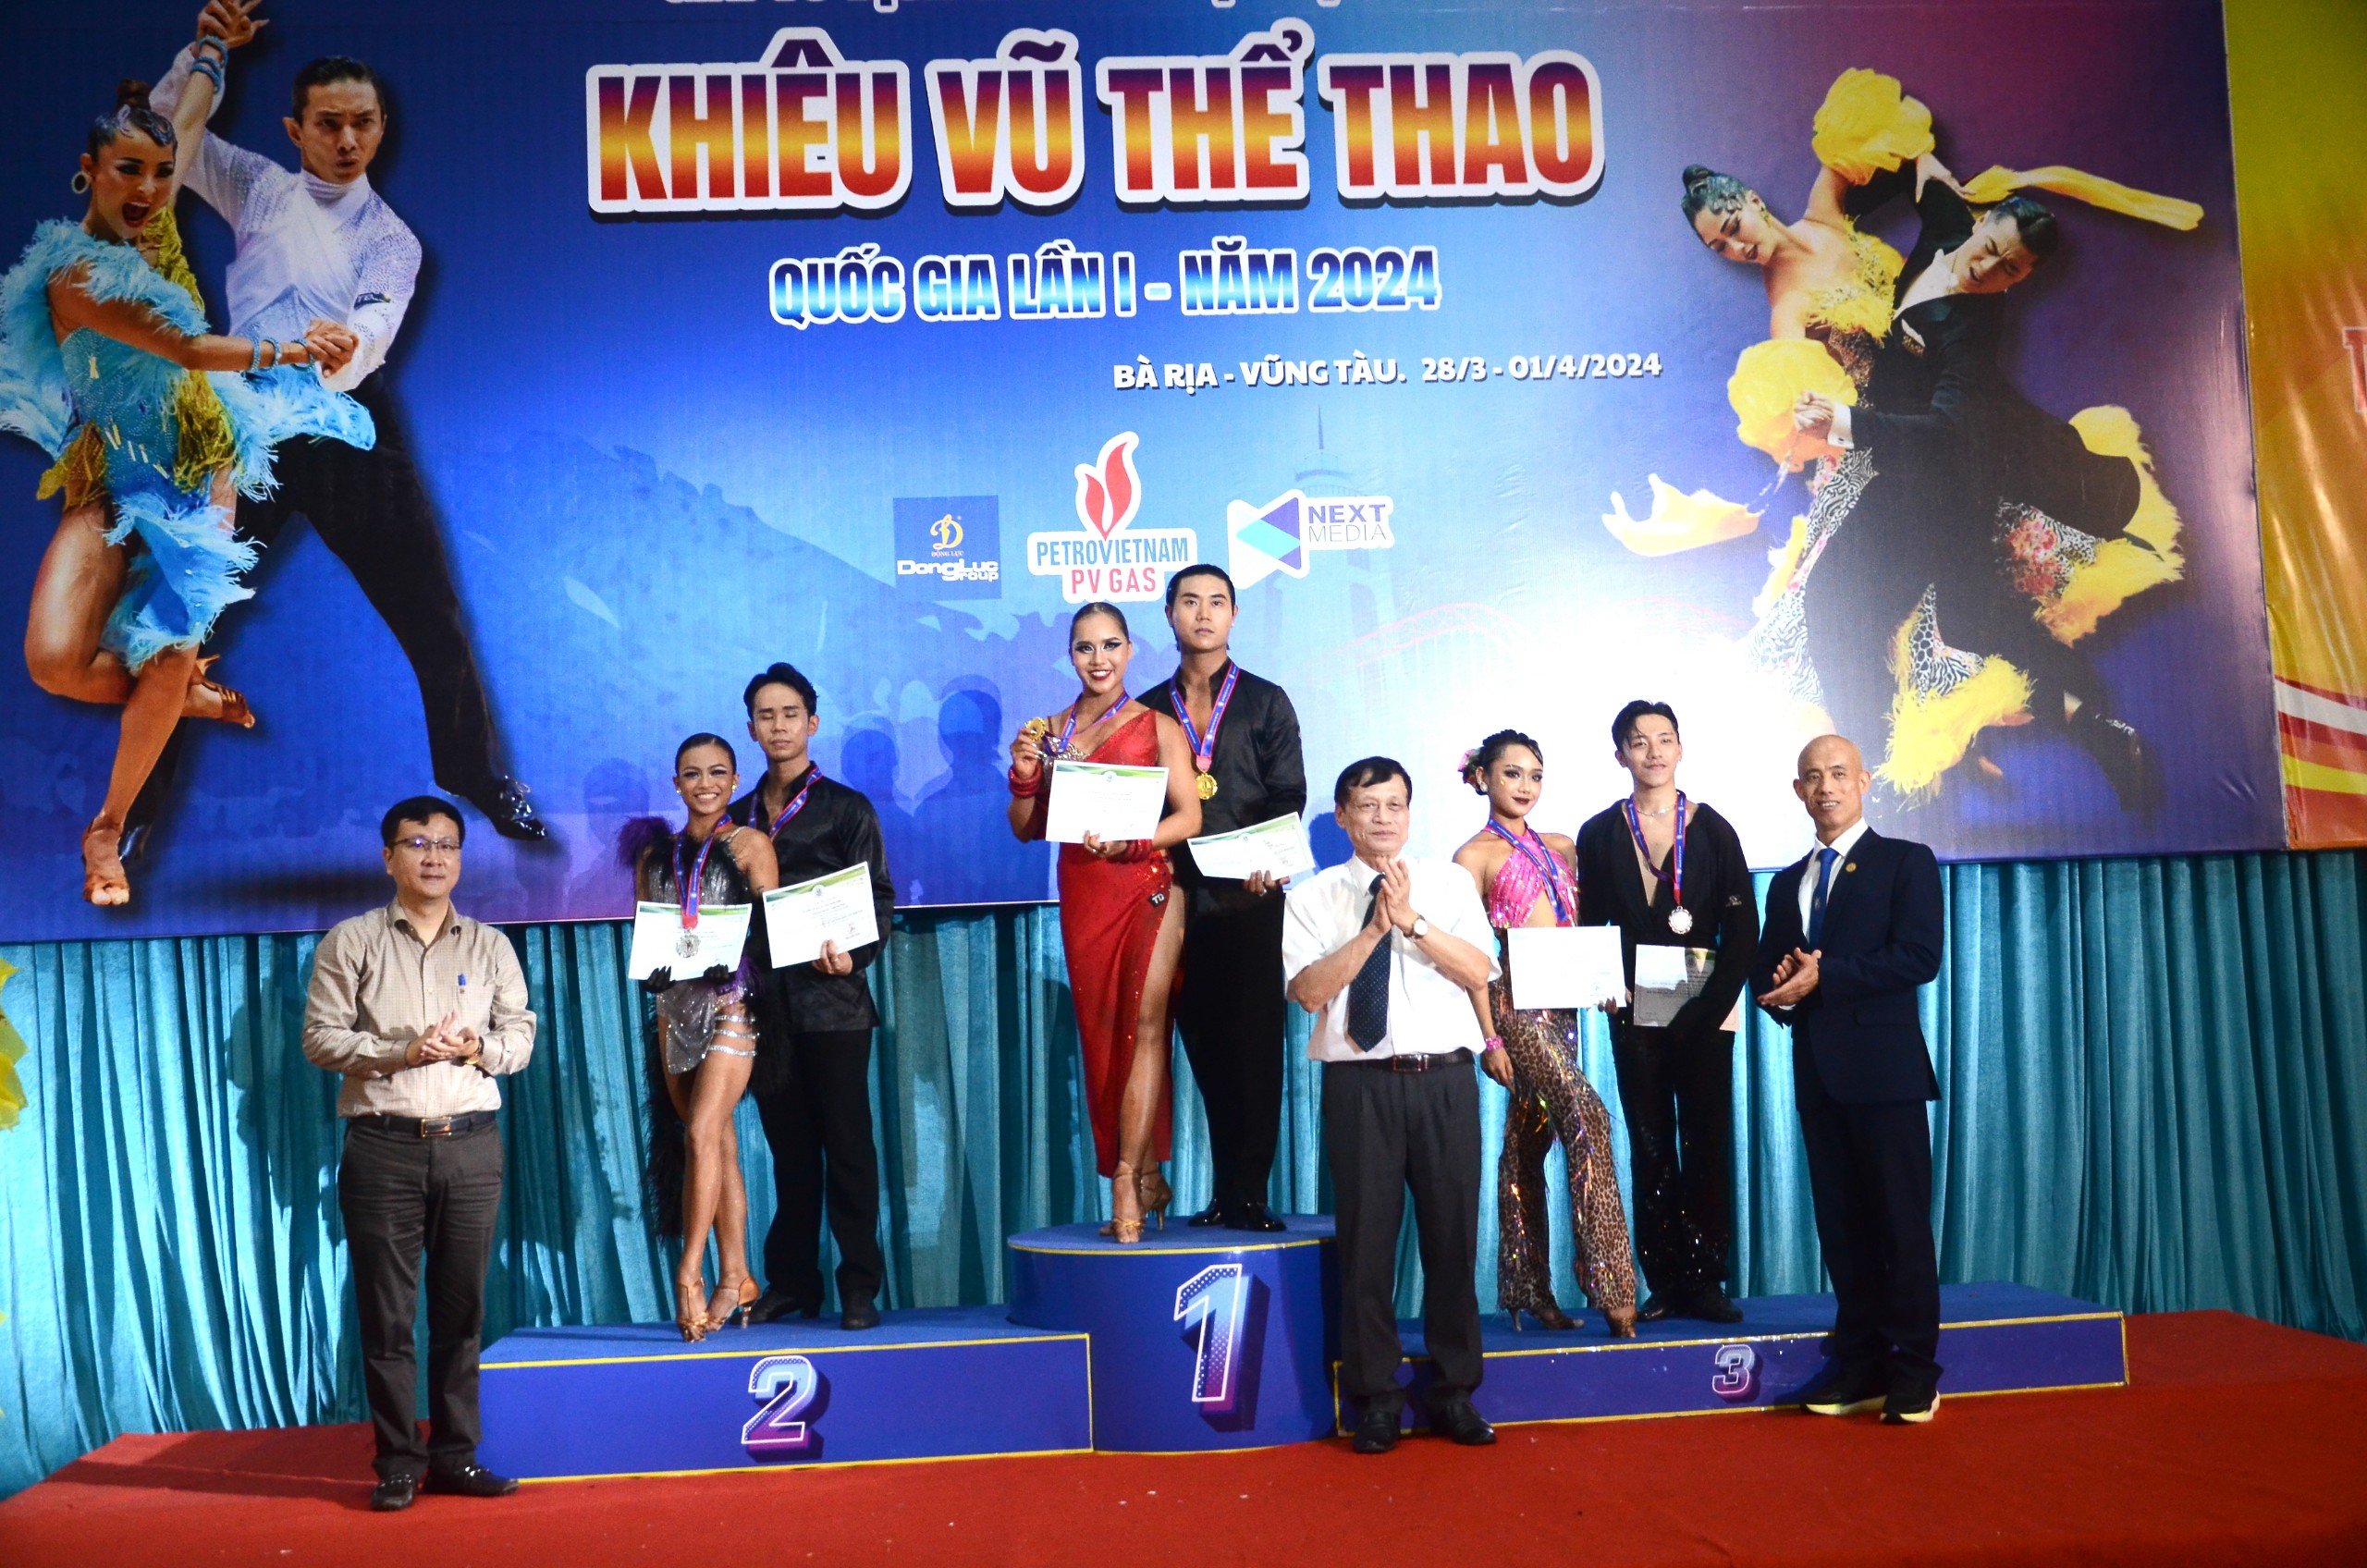 2 VĐV Quang Huy và Thùy Dương của Bà Rịa - Vũng Tàu giành HCV tại giải vô địch các câu lạc bộ. 